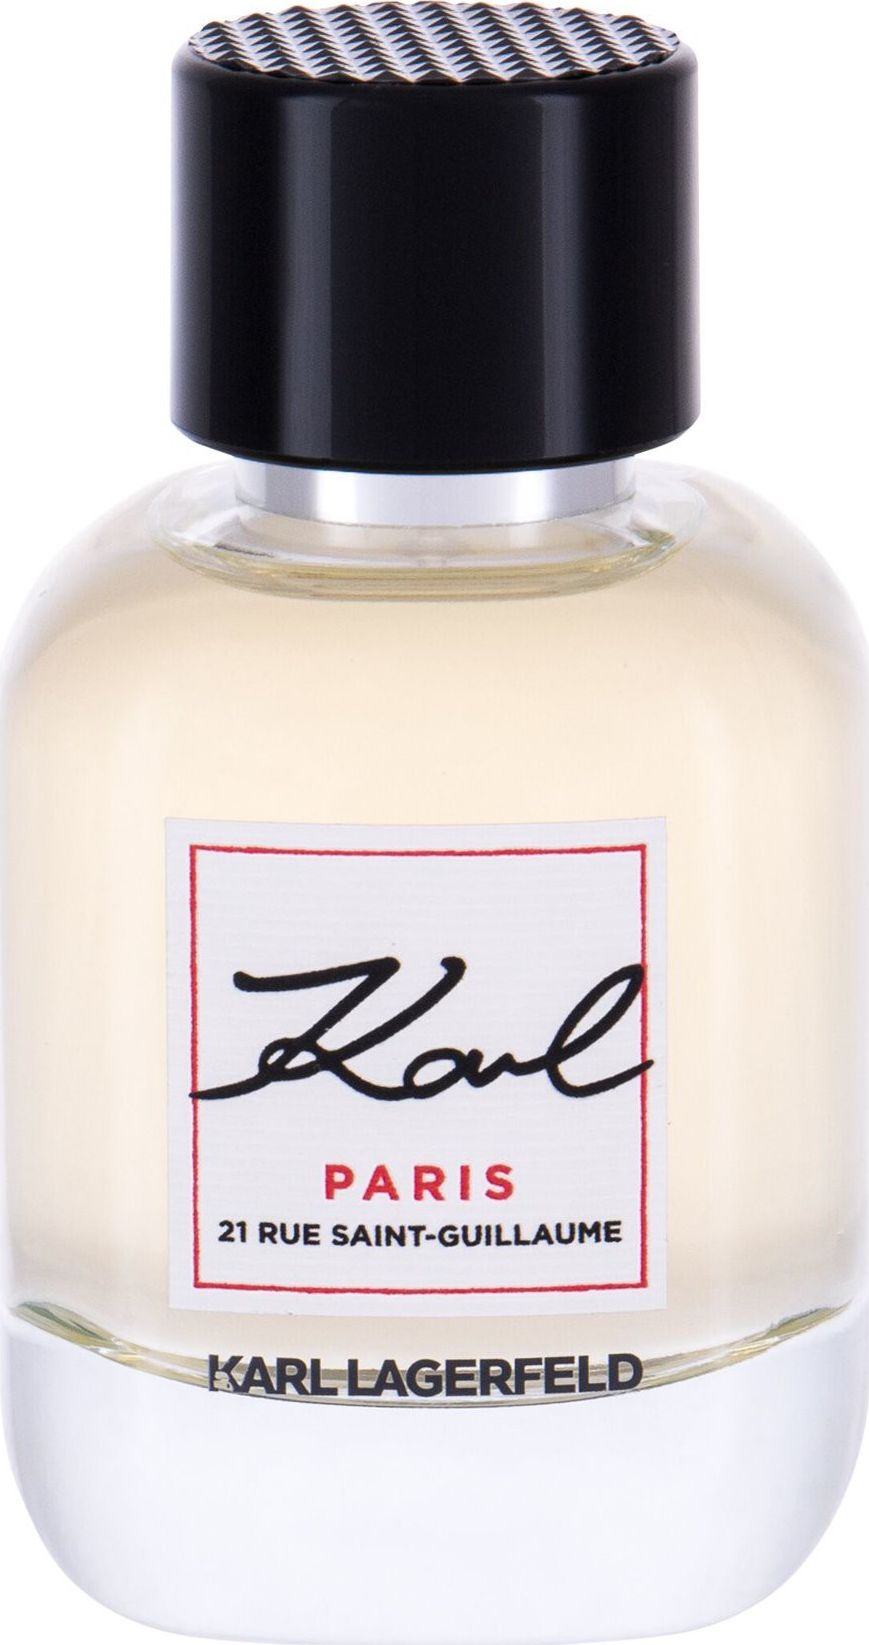 Descriere tradusa din poloneza: Karl Lagerfeld Karl Paris 21 Rue Saint-Guillaume EDP 60 ml este un parfum luxos pentru femei, creat de celebrul designer german Karl Lagerfeld. Numele sau este o combinatie intre numele sau si locatia boutique-ului sau